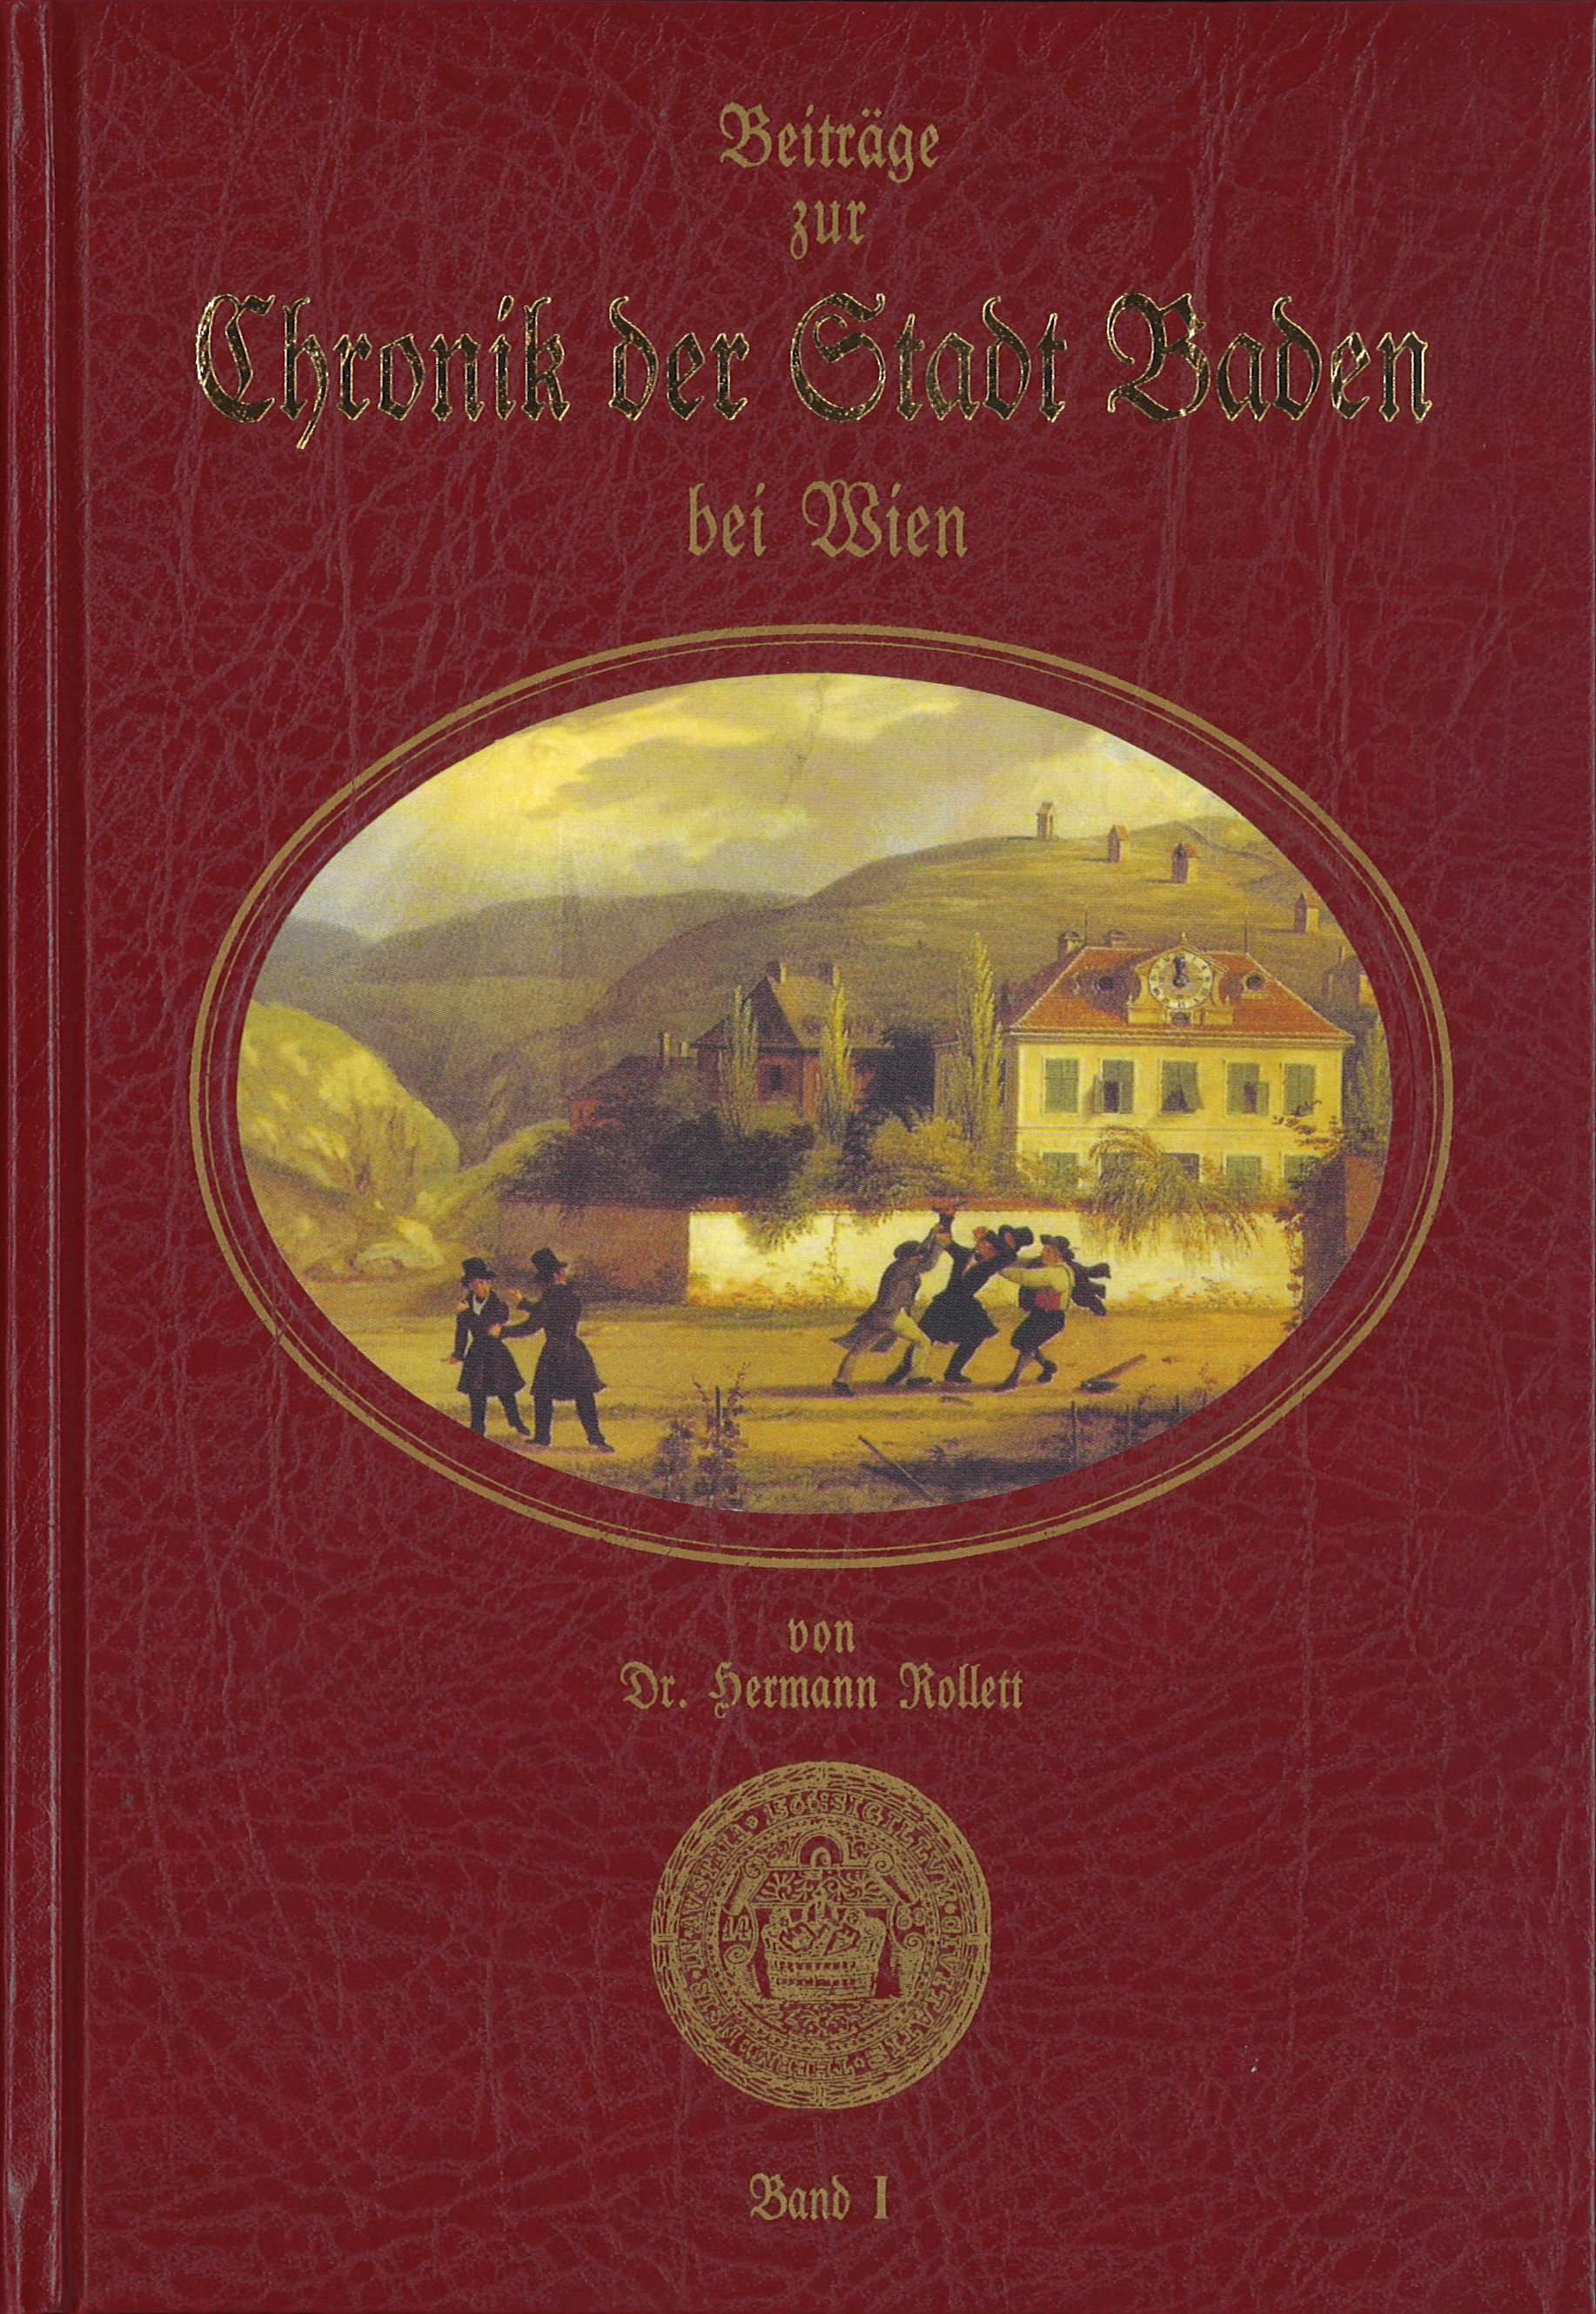 Beiträge zur Chronik Chronik der Stadt Baden bei Wien von Dr. Hermann Rollett Band 1, 560 Seiten, Rudolf Maurer € 49,00